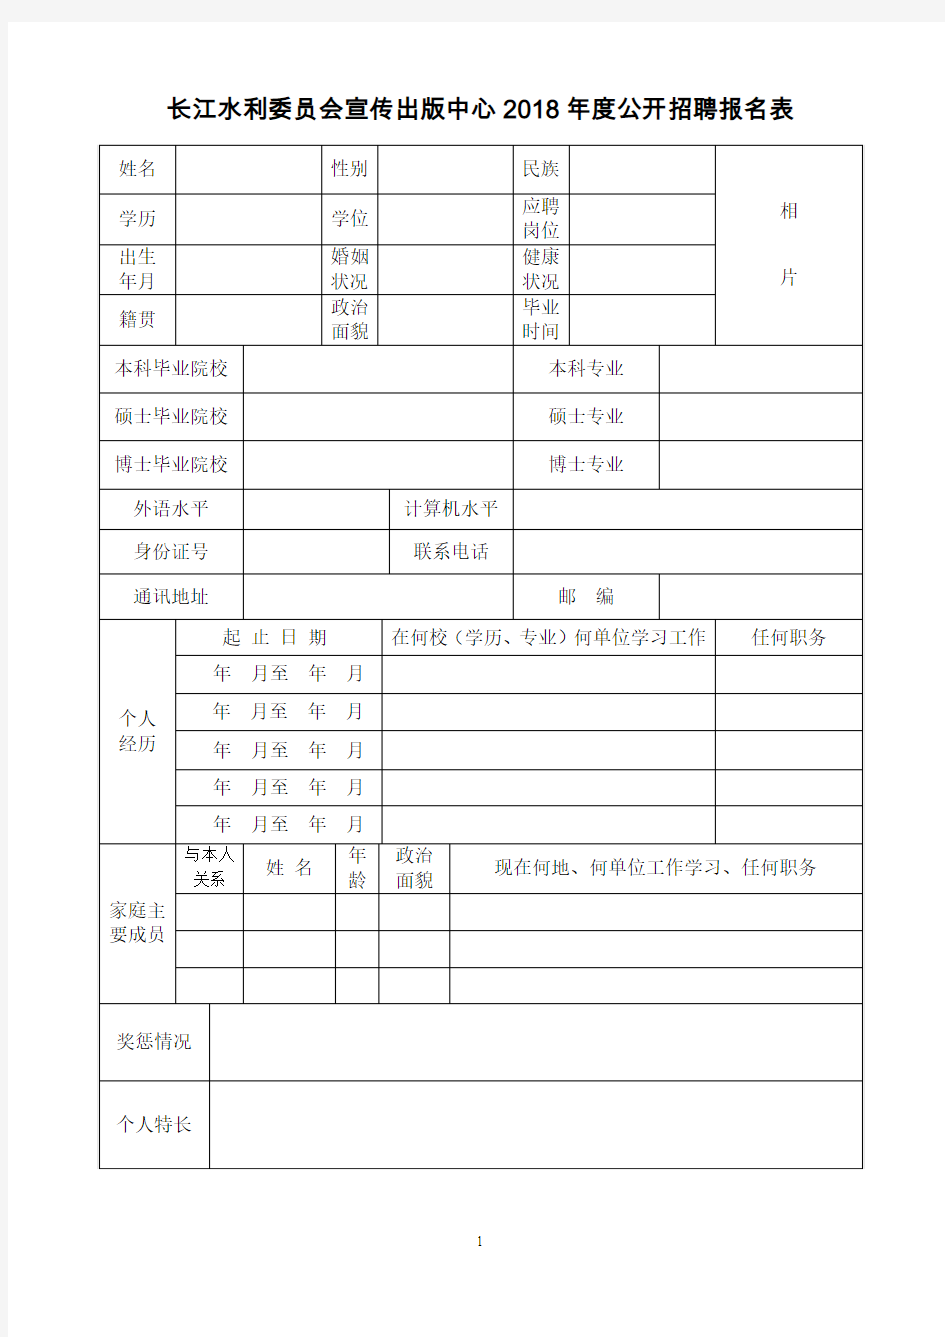 长江水利委员会宣传出版中心2018公开招聘报名表